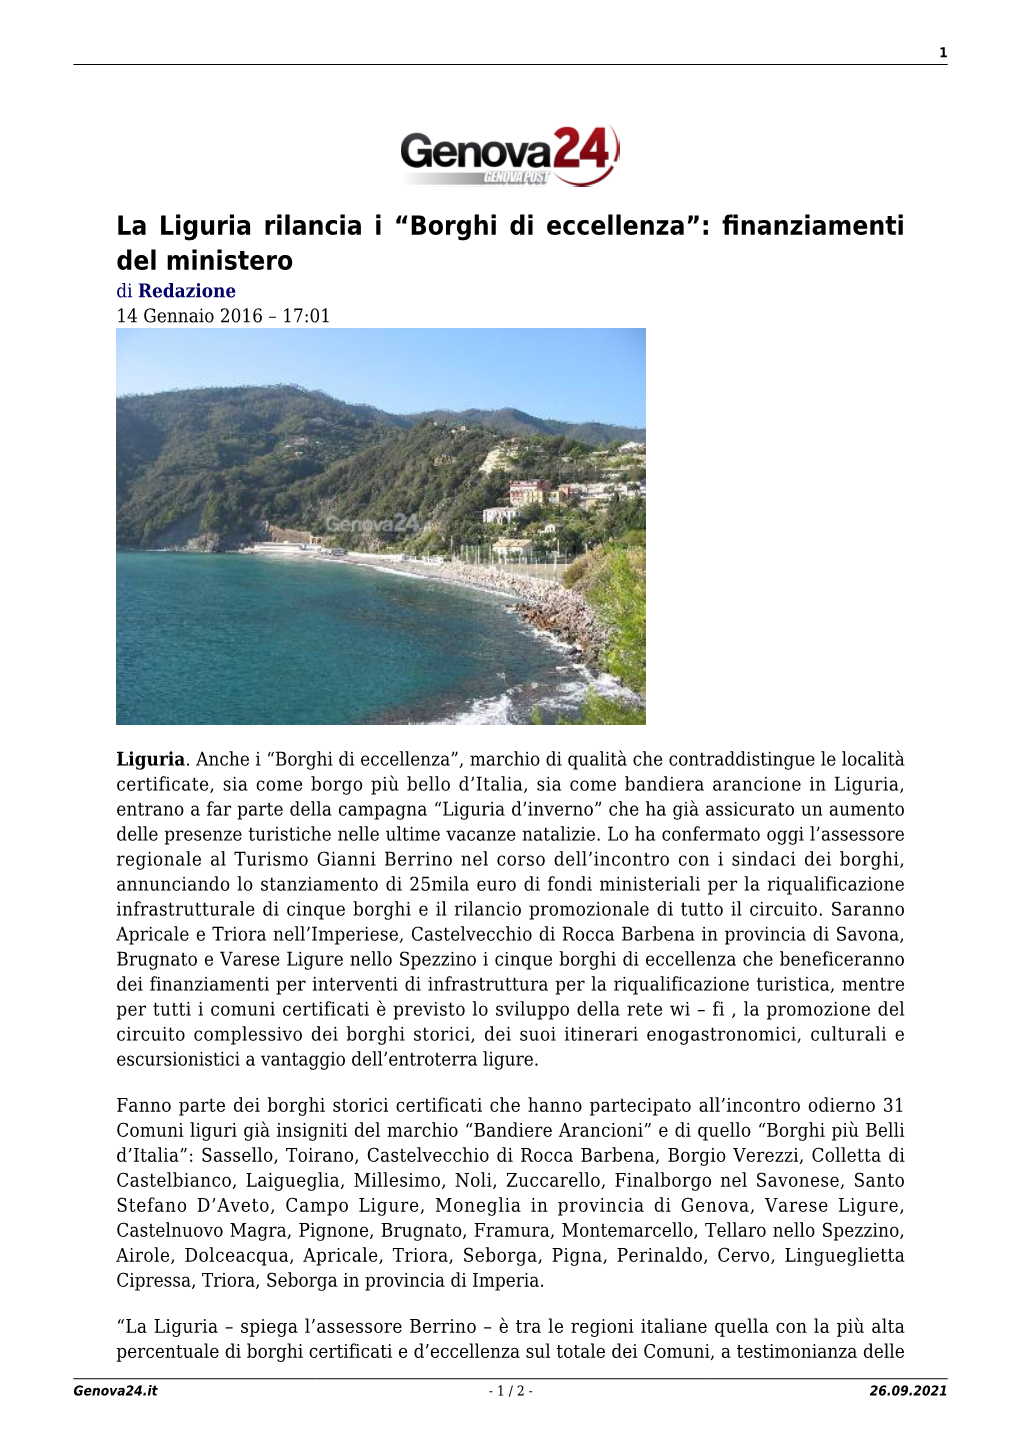 La Liguria Rilancia I “Borghi Di Eccellenza”: Finanziamenti Del Ministero